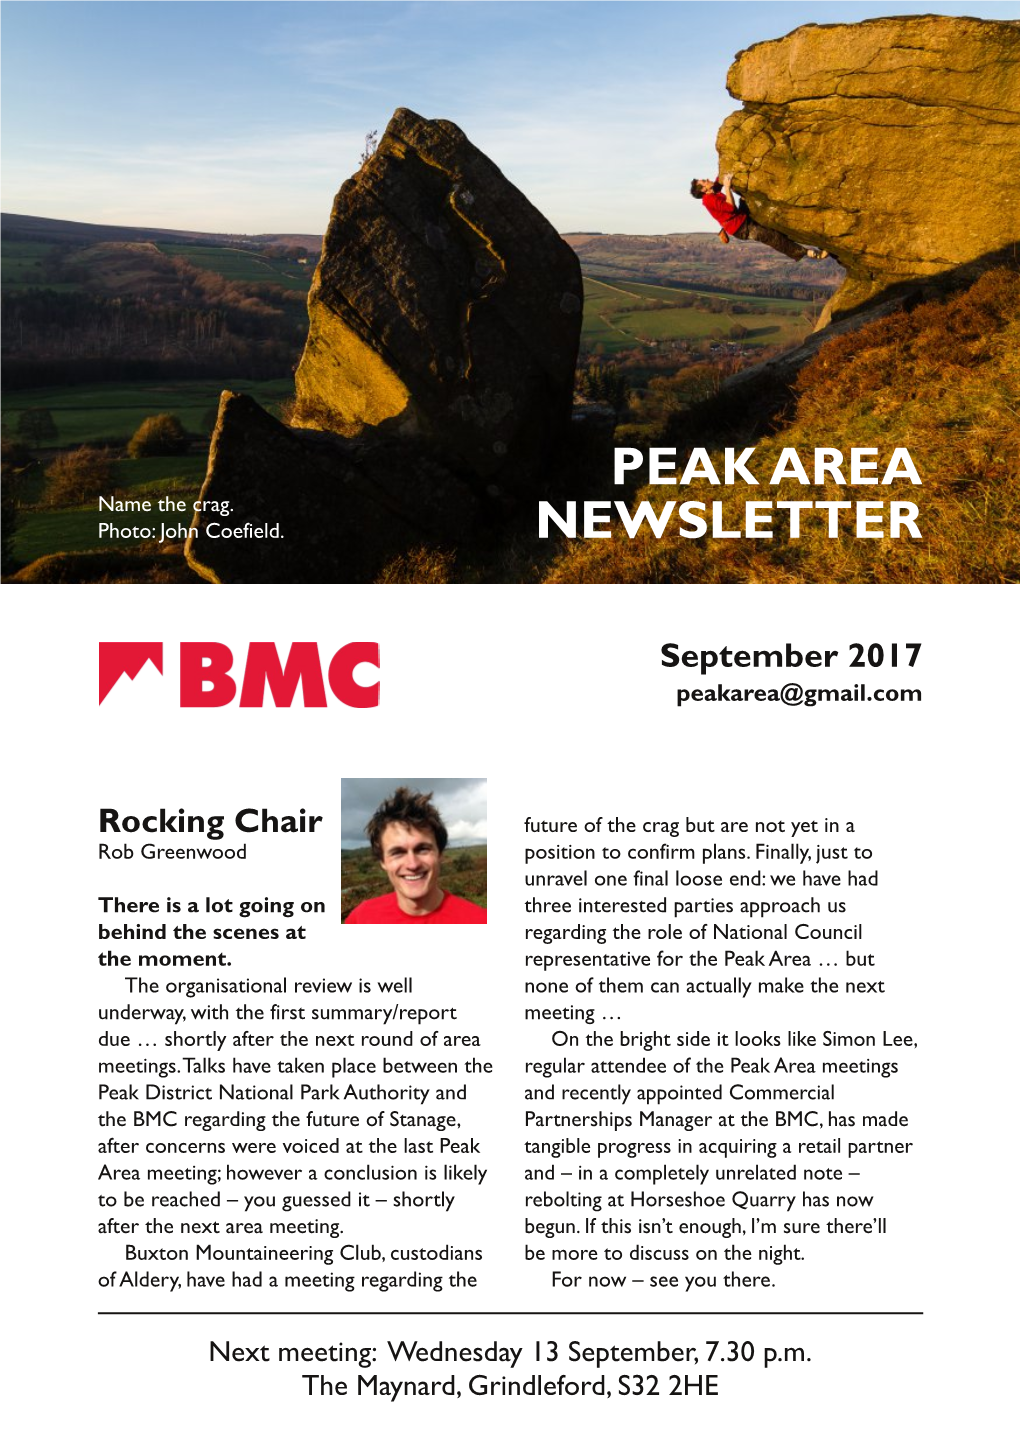 Peak Area Newsletter